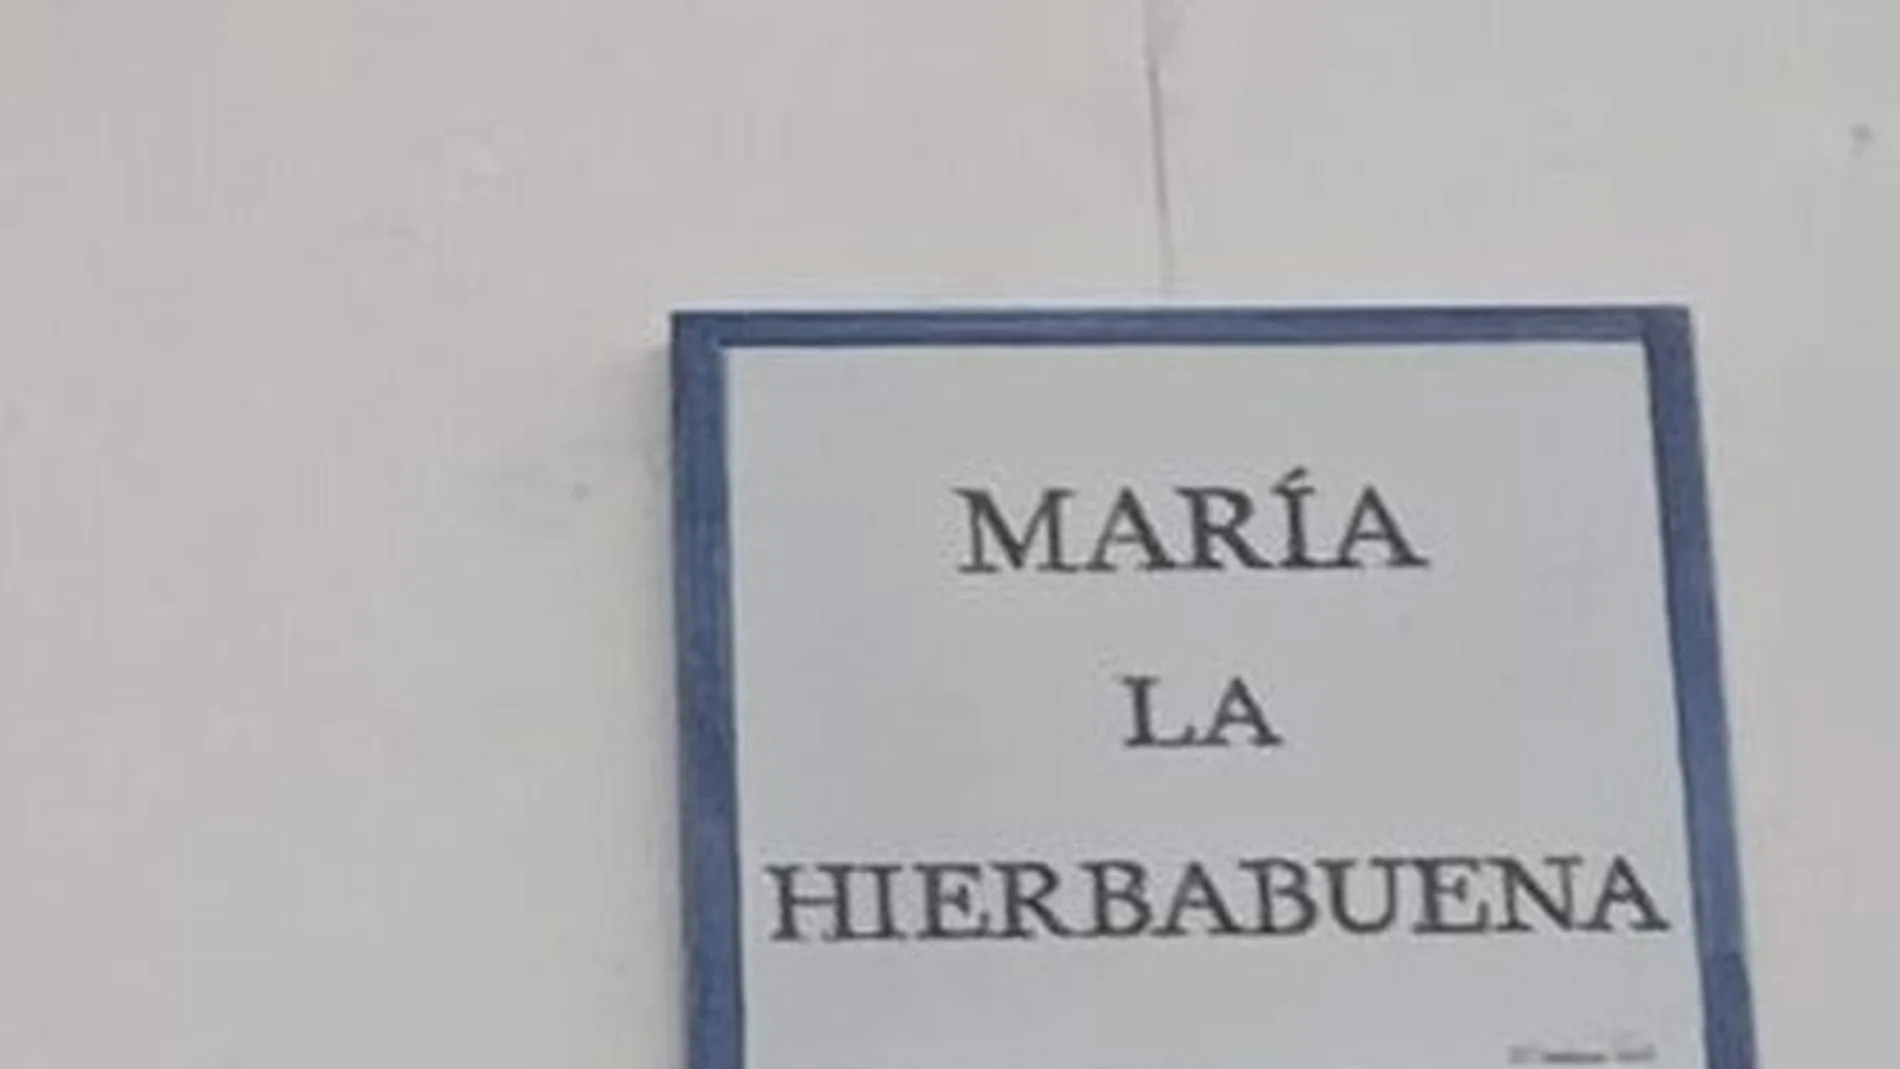 La inauguración de calle María 'La Hierbabuena' en Cádiz despierta risas y curiosidad en redes sociales